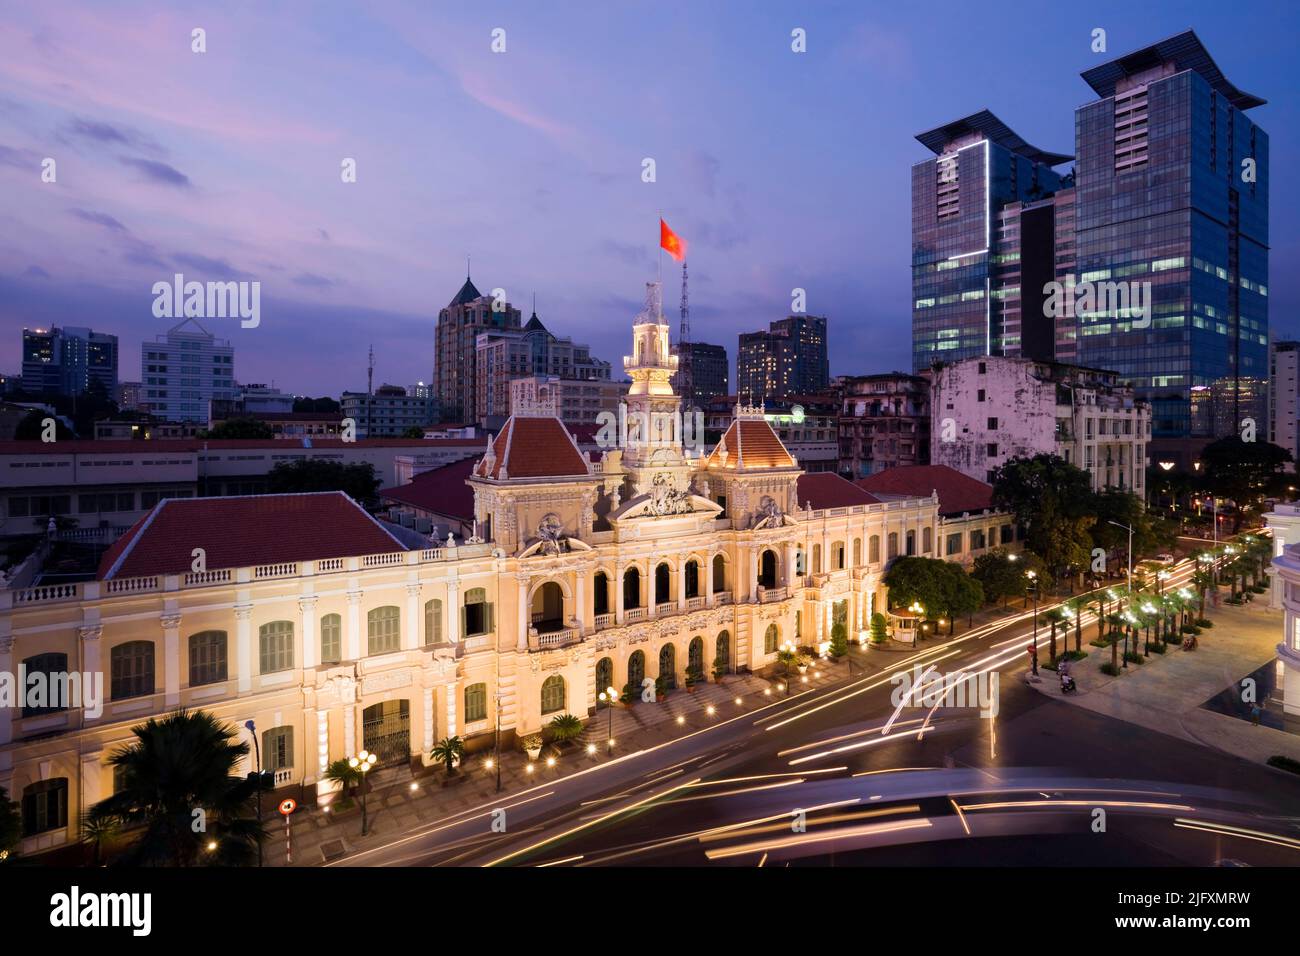 Ho Chi Minh City Hall o Hotel de Ville de Saigon è stato costruito nel 1902-1908 in stile coloniale francese per l'allora città di Saigon. È stato rinominato dopo Foto Stock